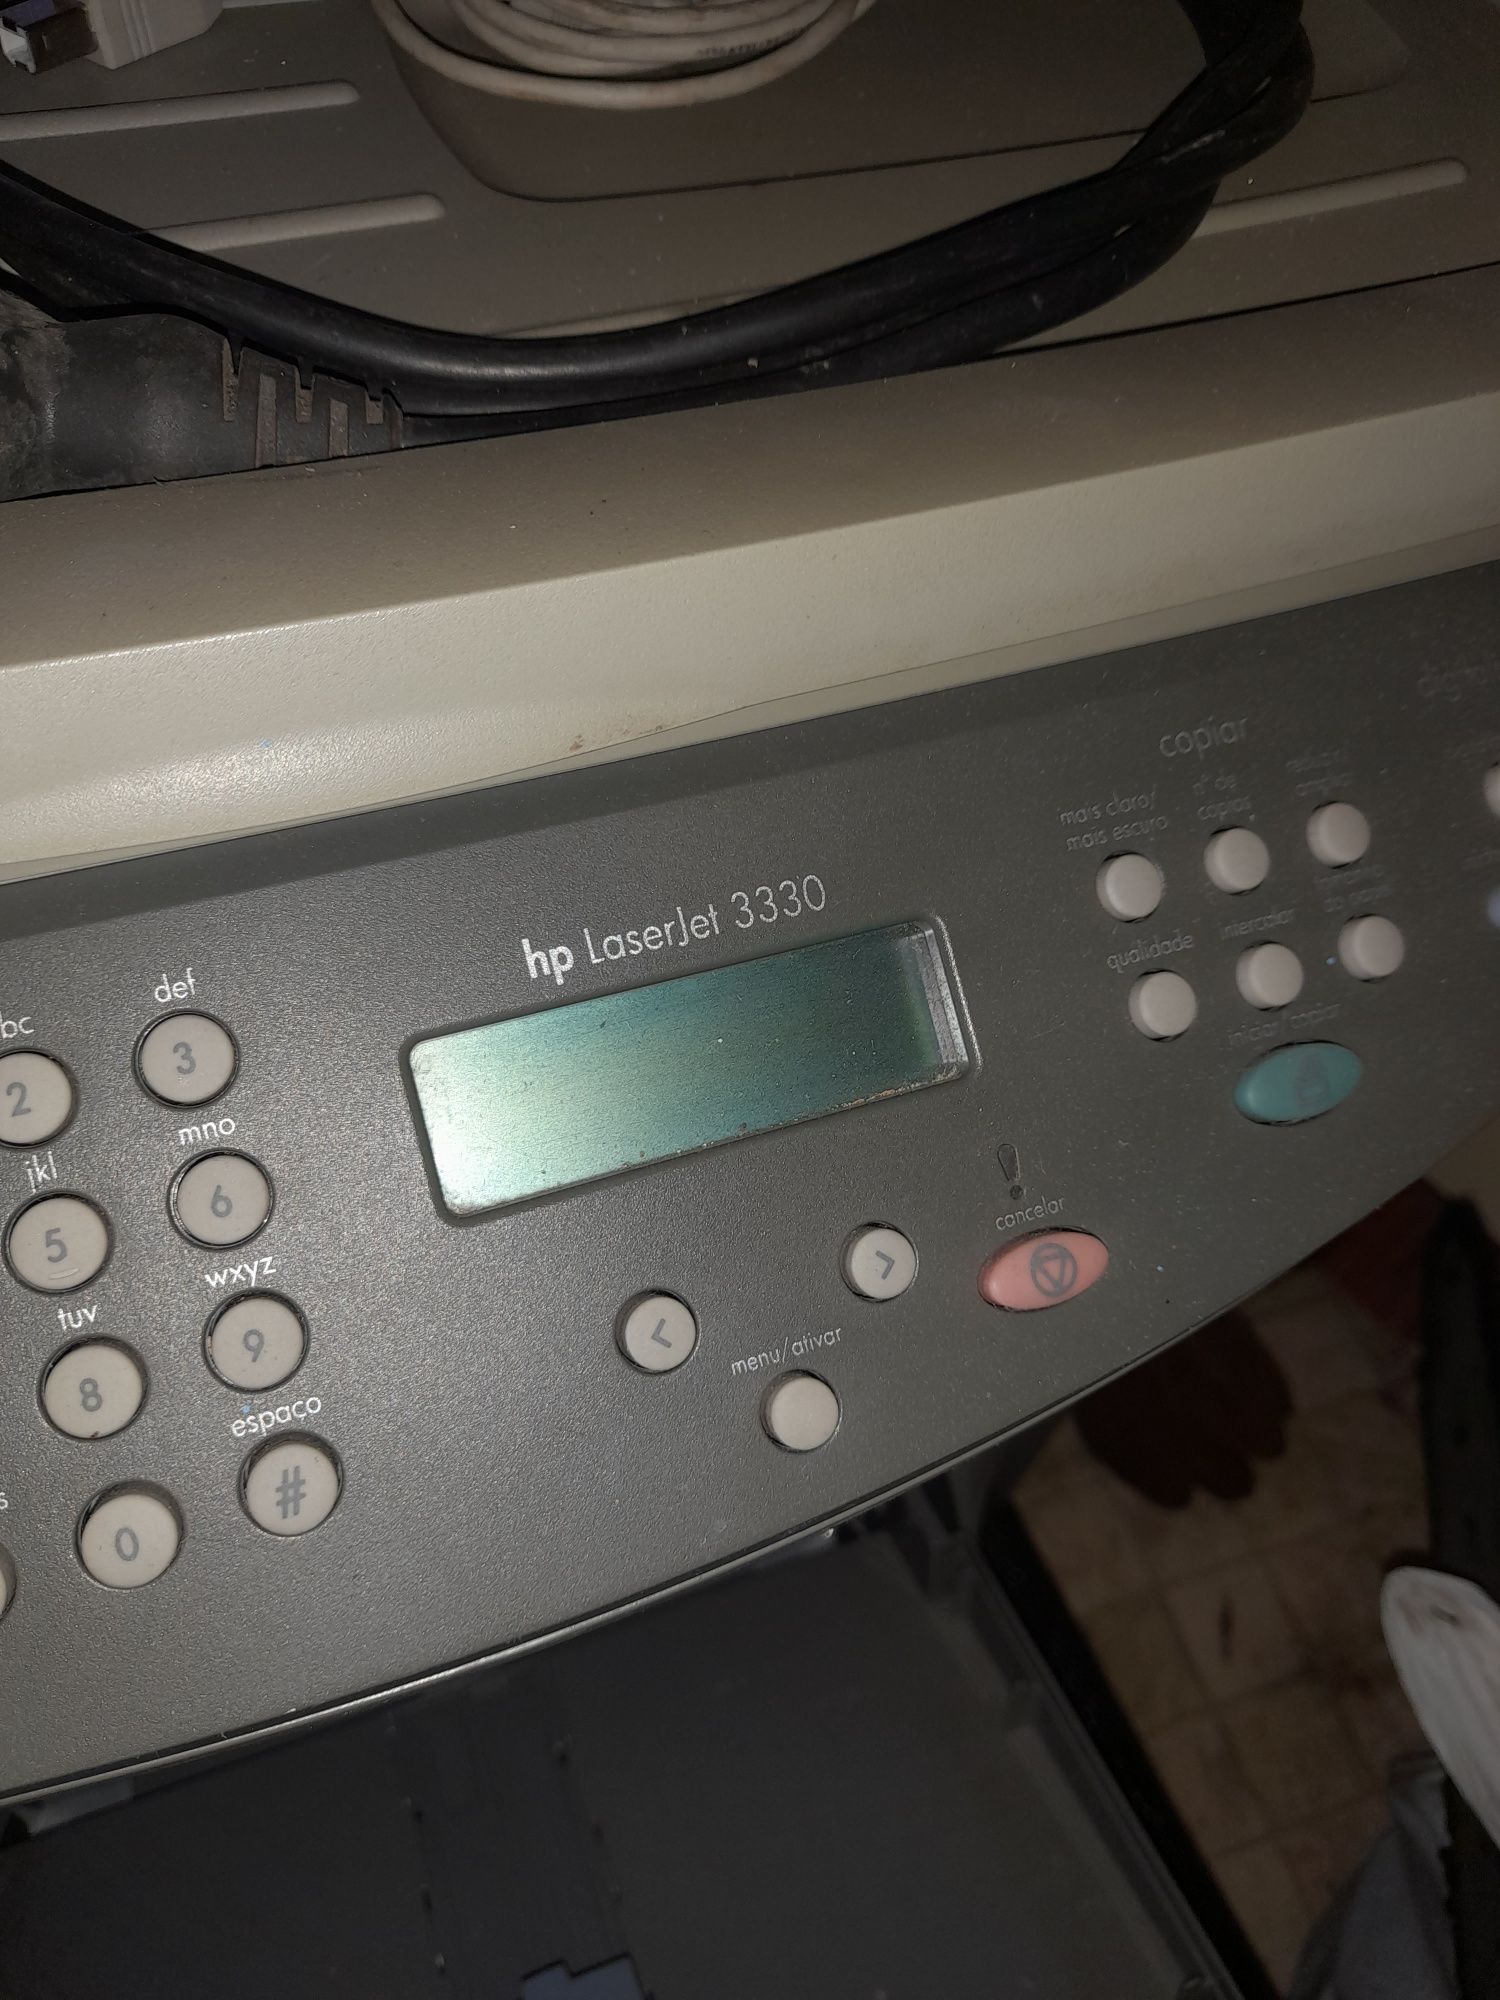 Copiadora xerox máquina fazer copias impressora